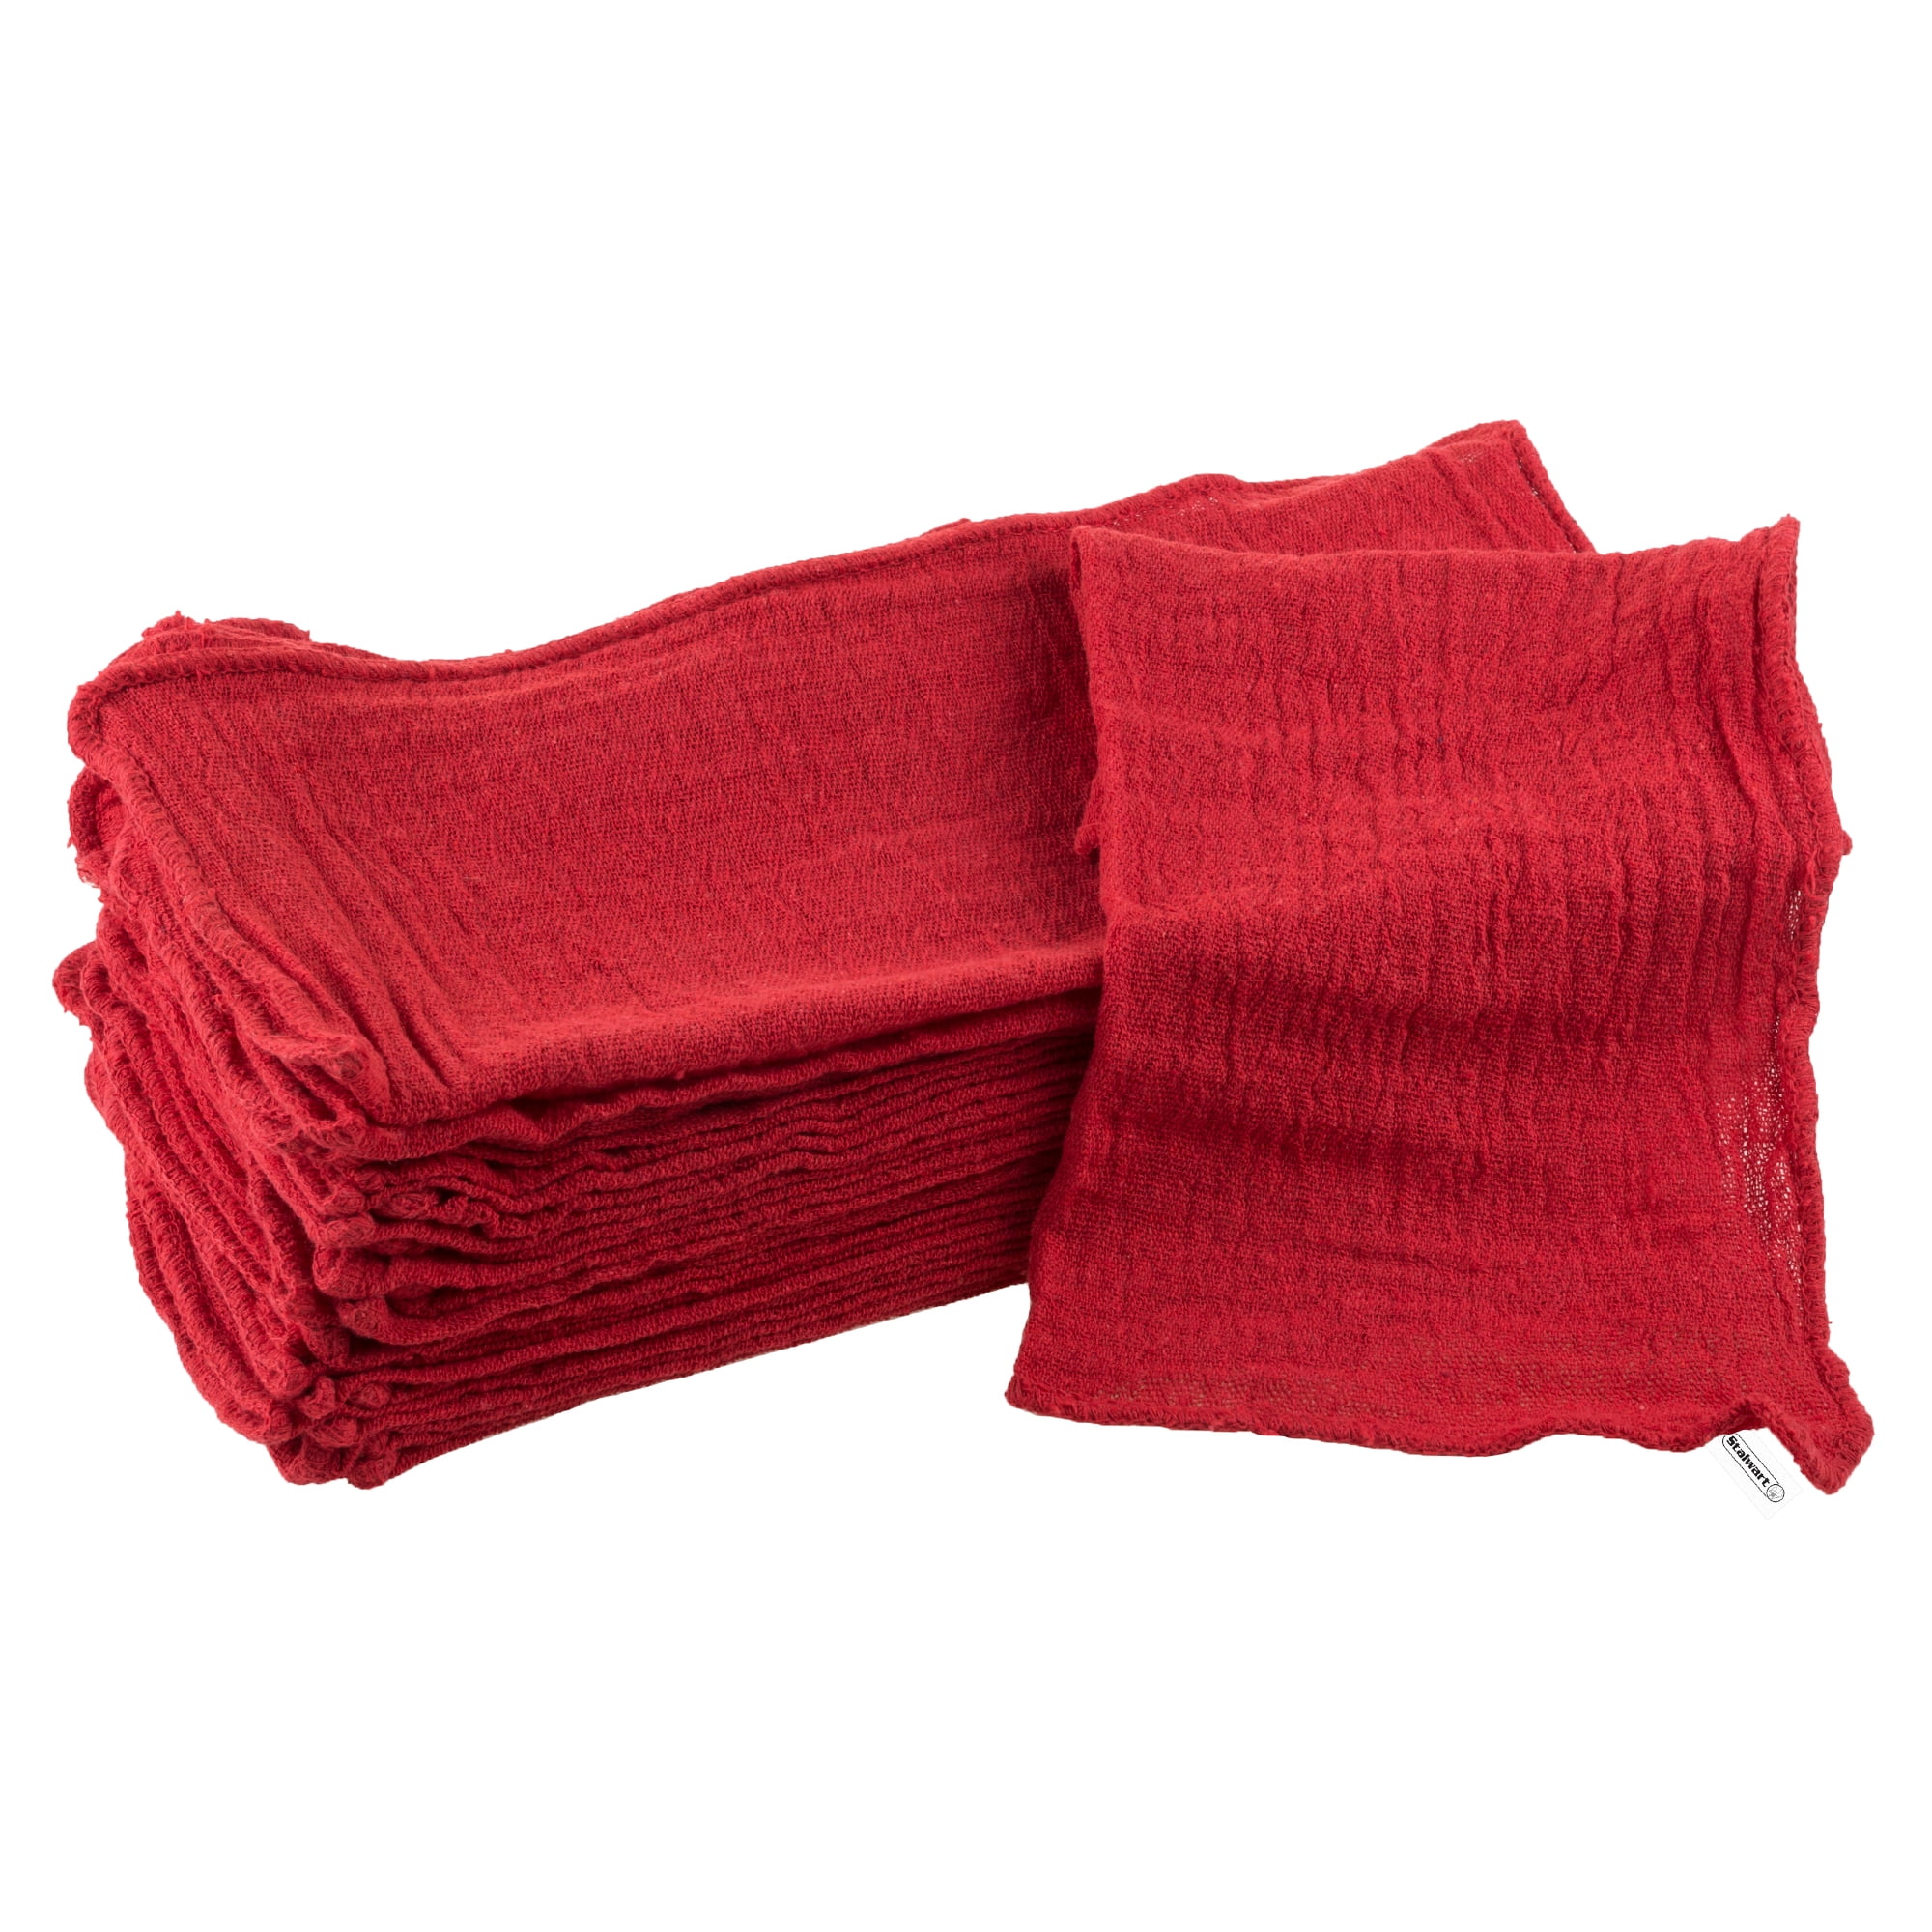 Microfiber Car Wash Towels - Red – Beautiful Rags